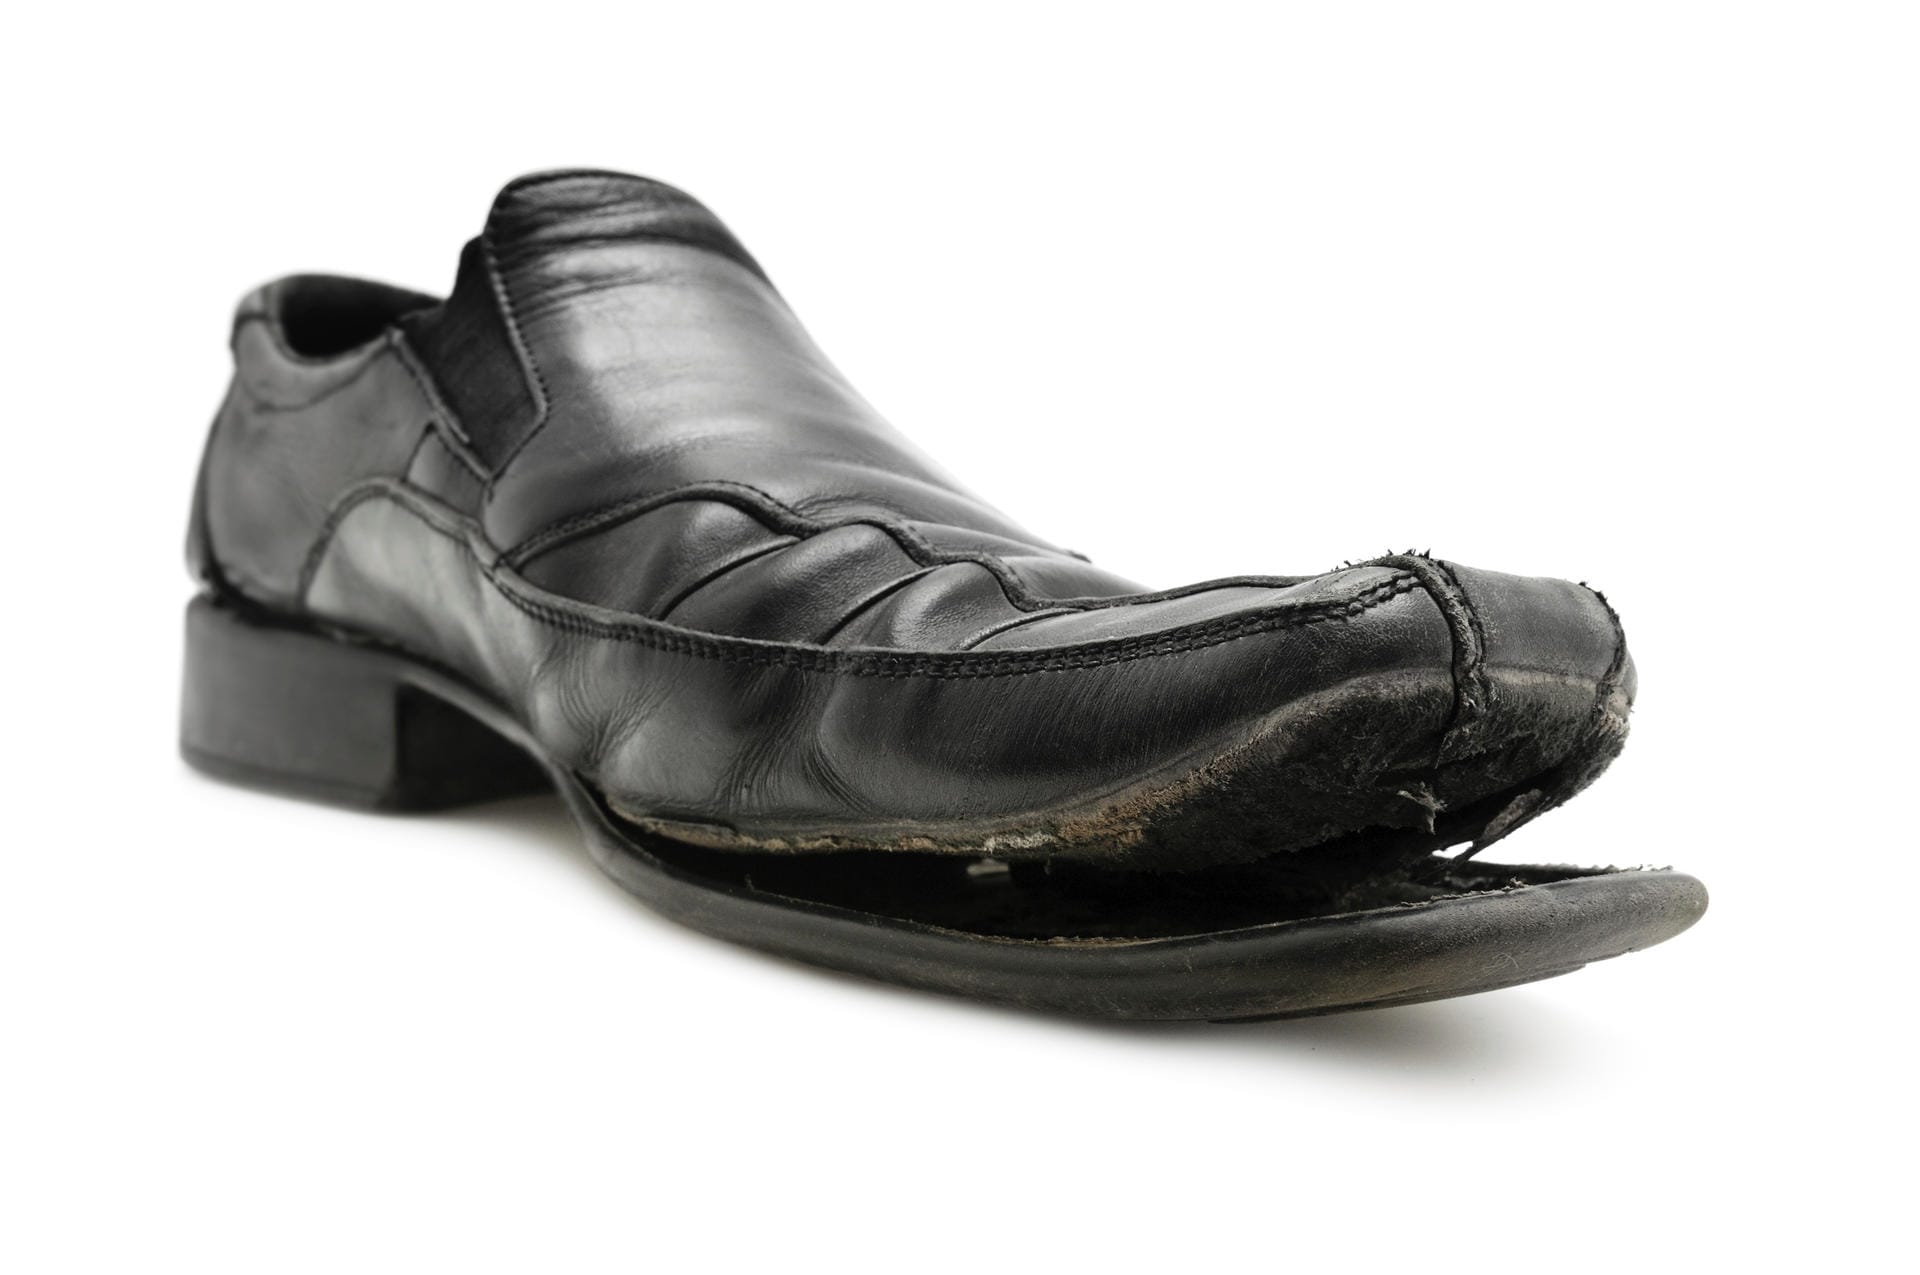 Laut einer Umfrage aus Österreich sprechen abgetragene Schuhe eine eindeutige Sprache: Ihre Besitzer werden als unordentlich und wenig pflichtbewusst eingeschätzt.